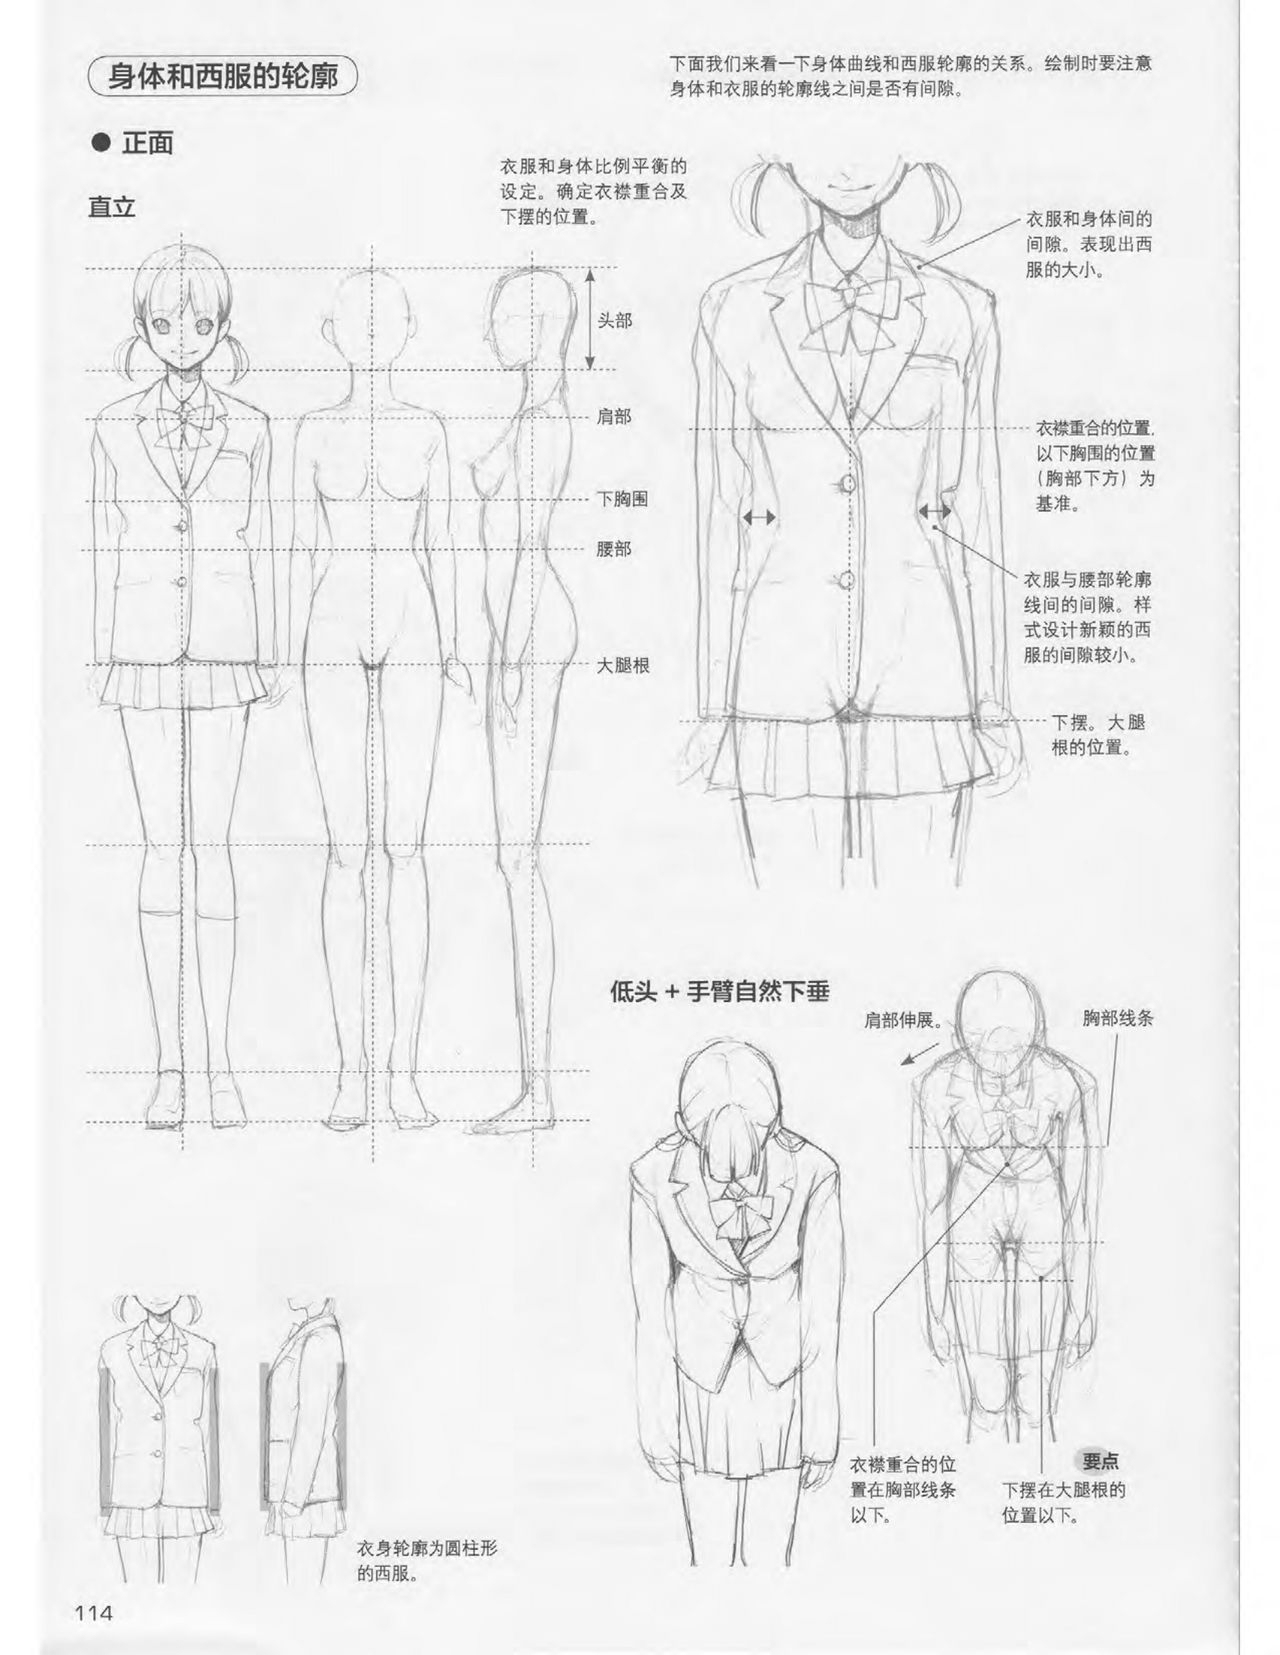 Japanese Manga Master Lecture 3: Lin Akira and Kakumaru Maru Talk About Glamorous Character Modeling 114